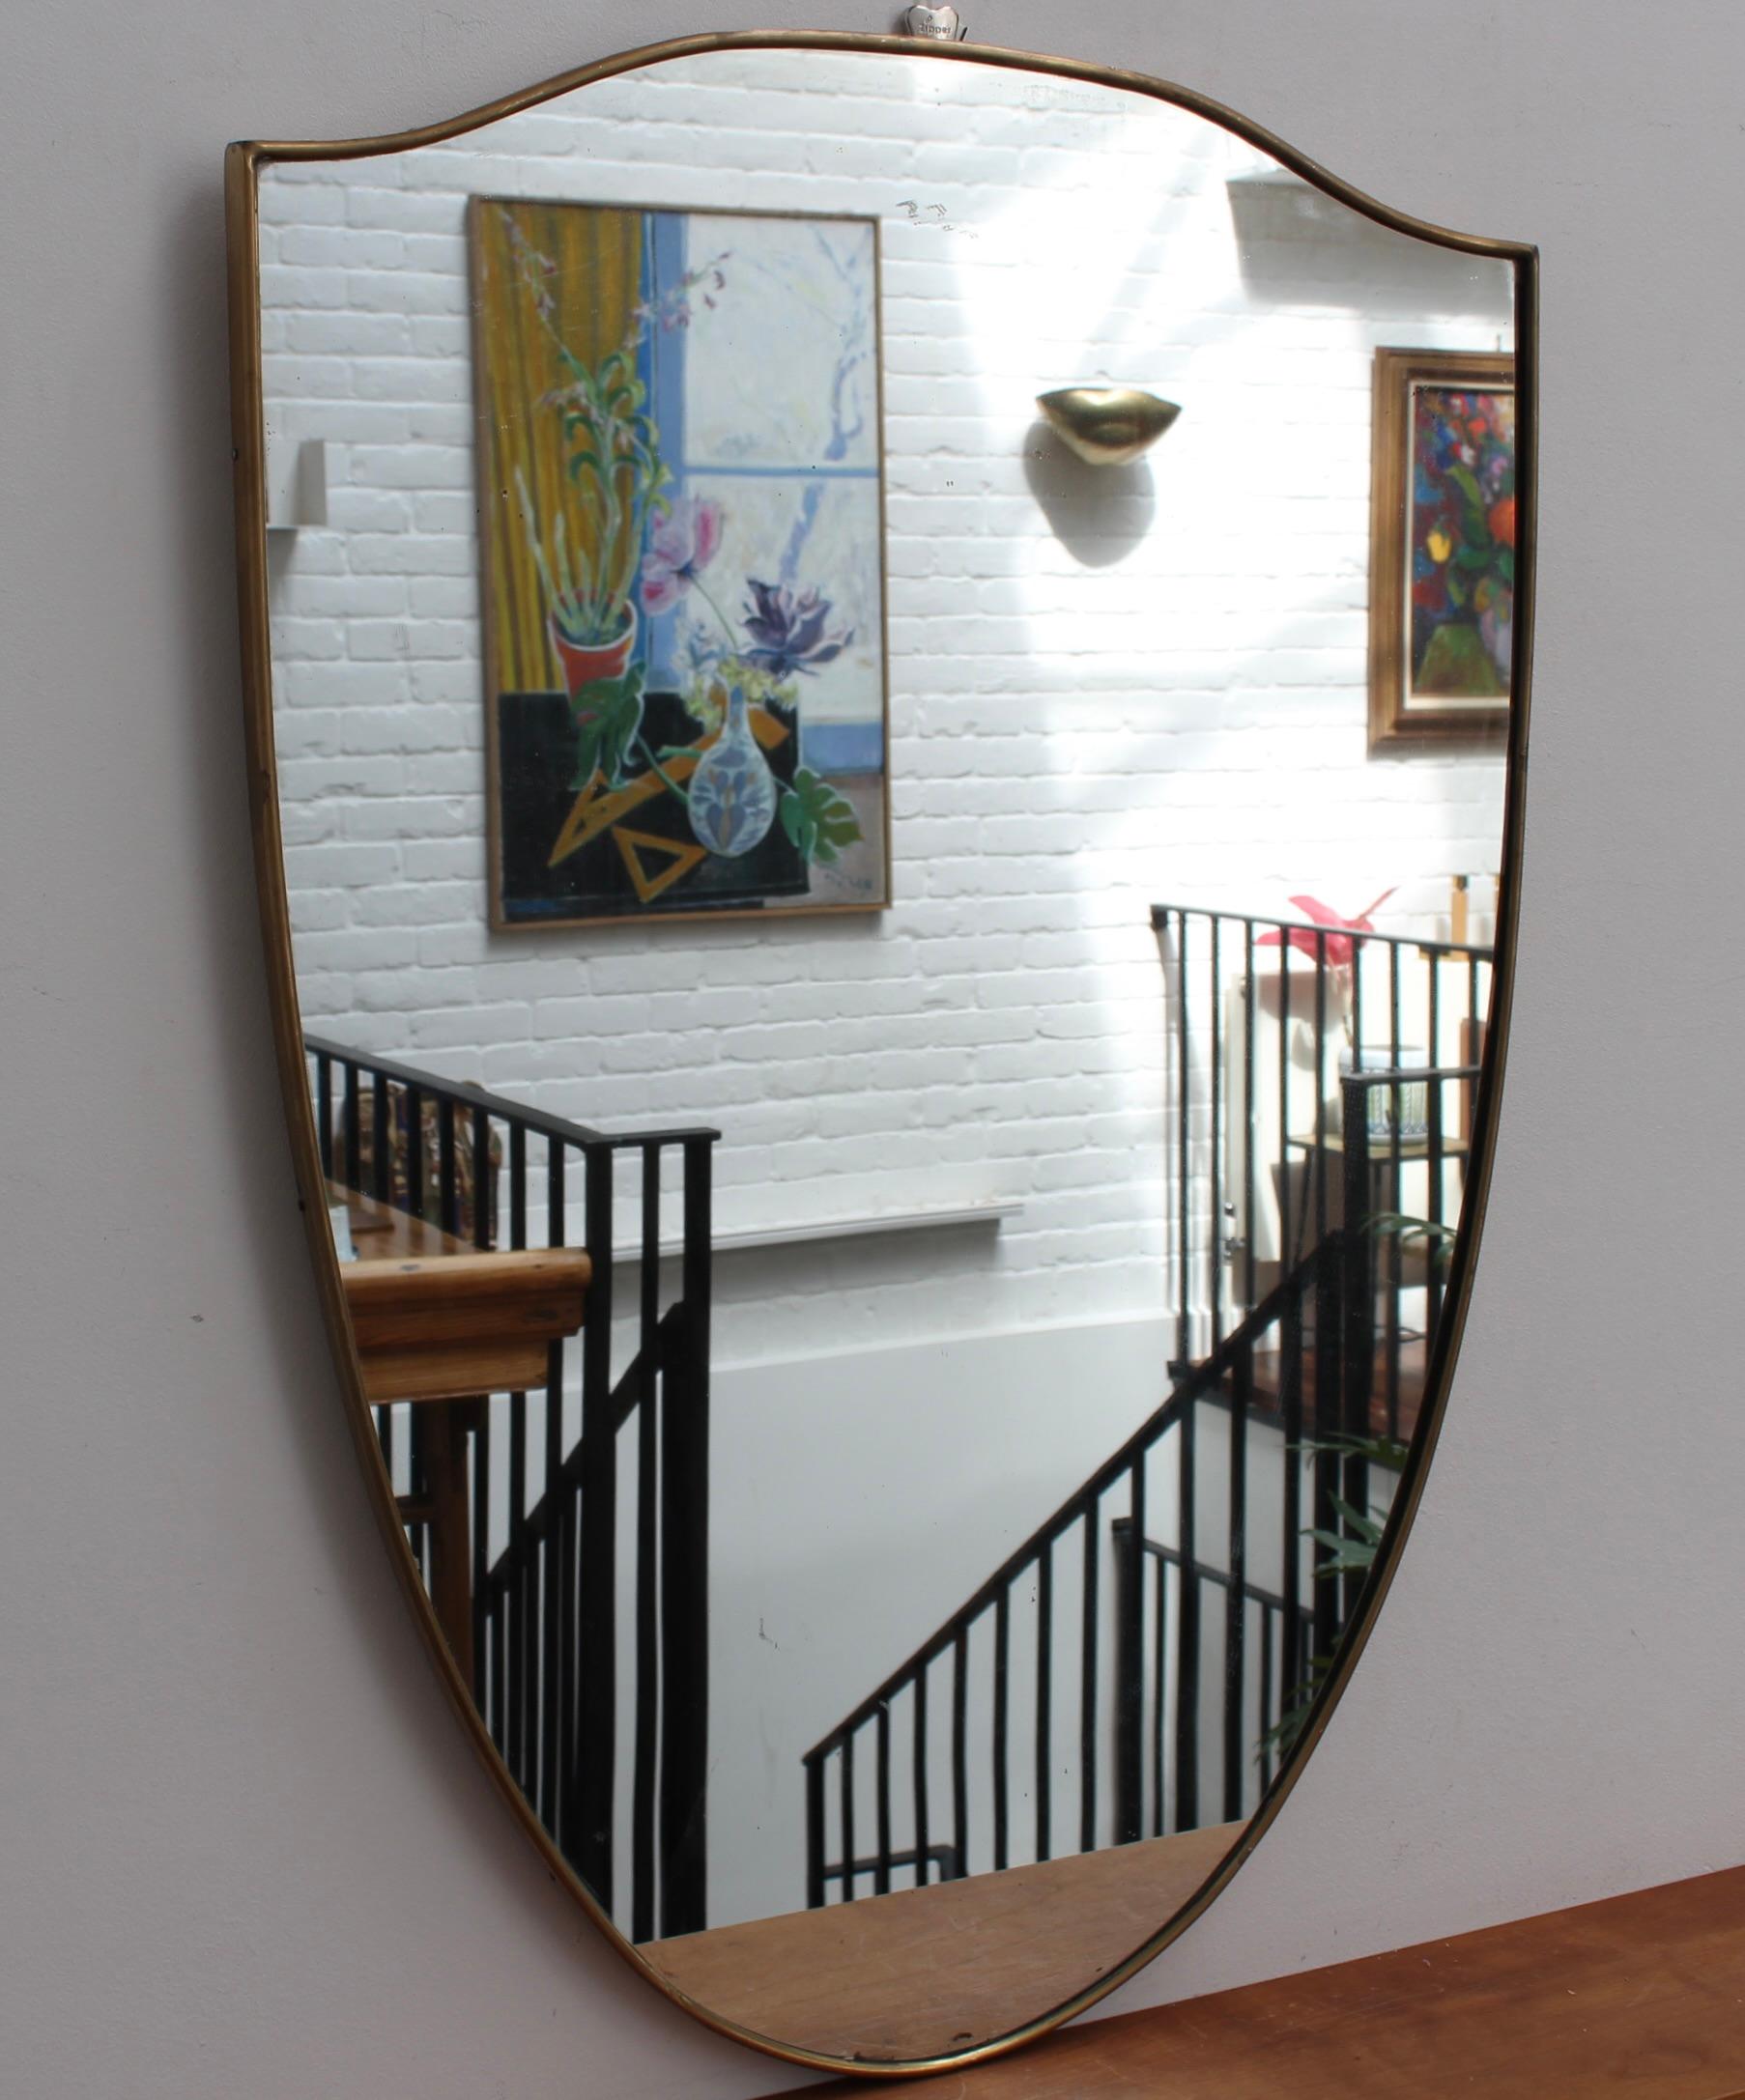 Miroir mural italien vintage avec cadre en laiton (circa 1960s). Le miroir a une forme magnifique et une élégance classique dans le style moderne de Gio Ponti. Le cadre est en bon état général, avec une patine vieillie ; il y a quelques taches